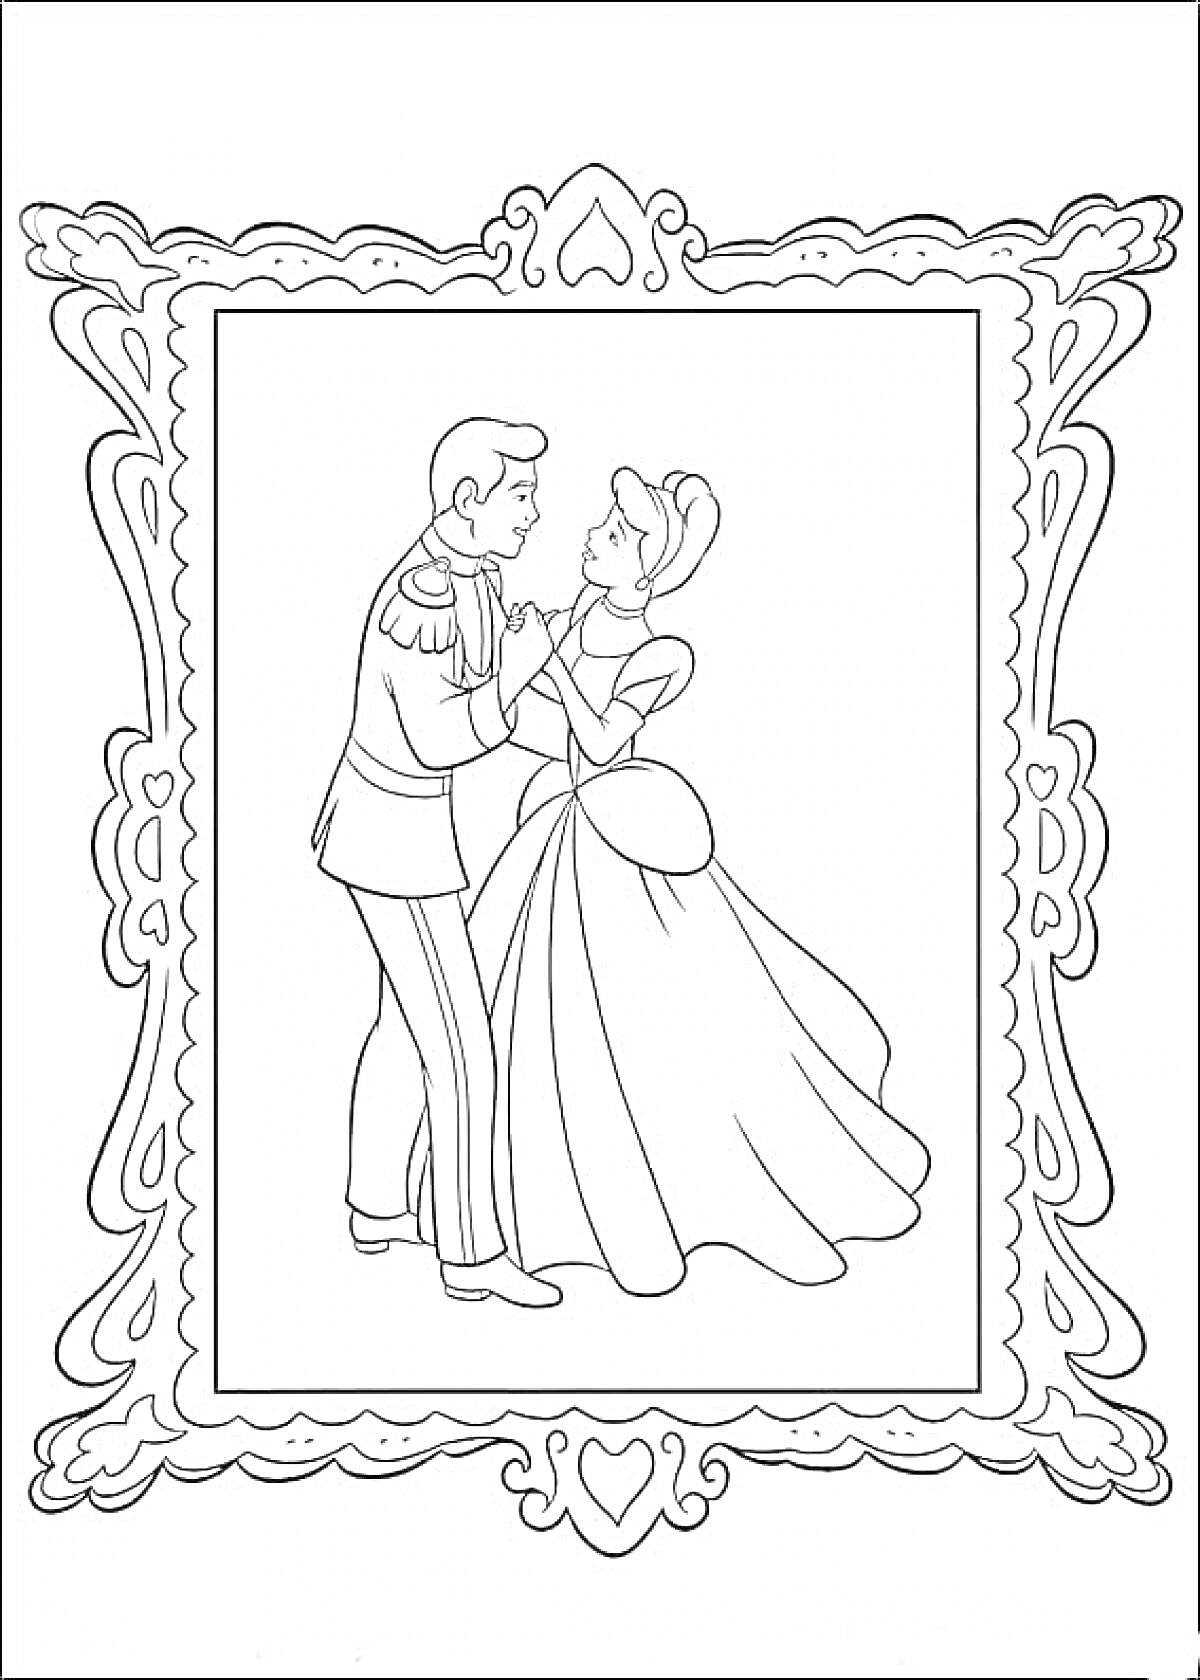 Раскраска Принц и принцесса в рамке, танцующие вместе